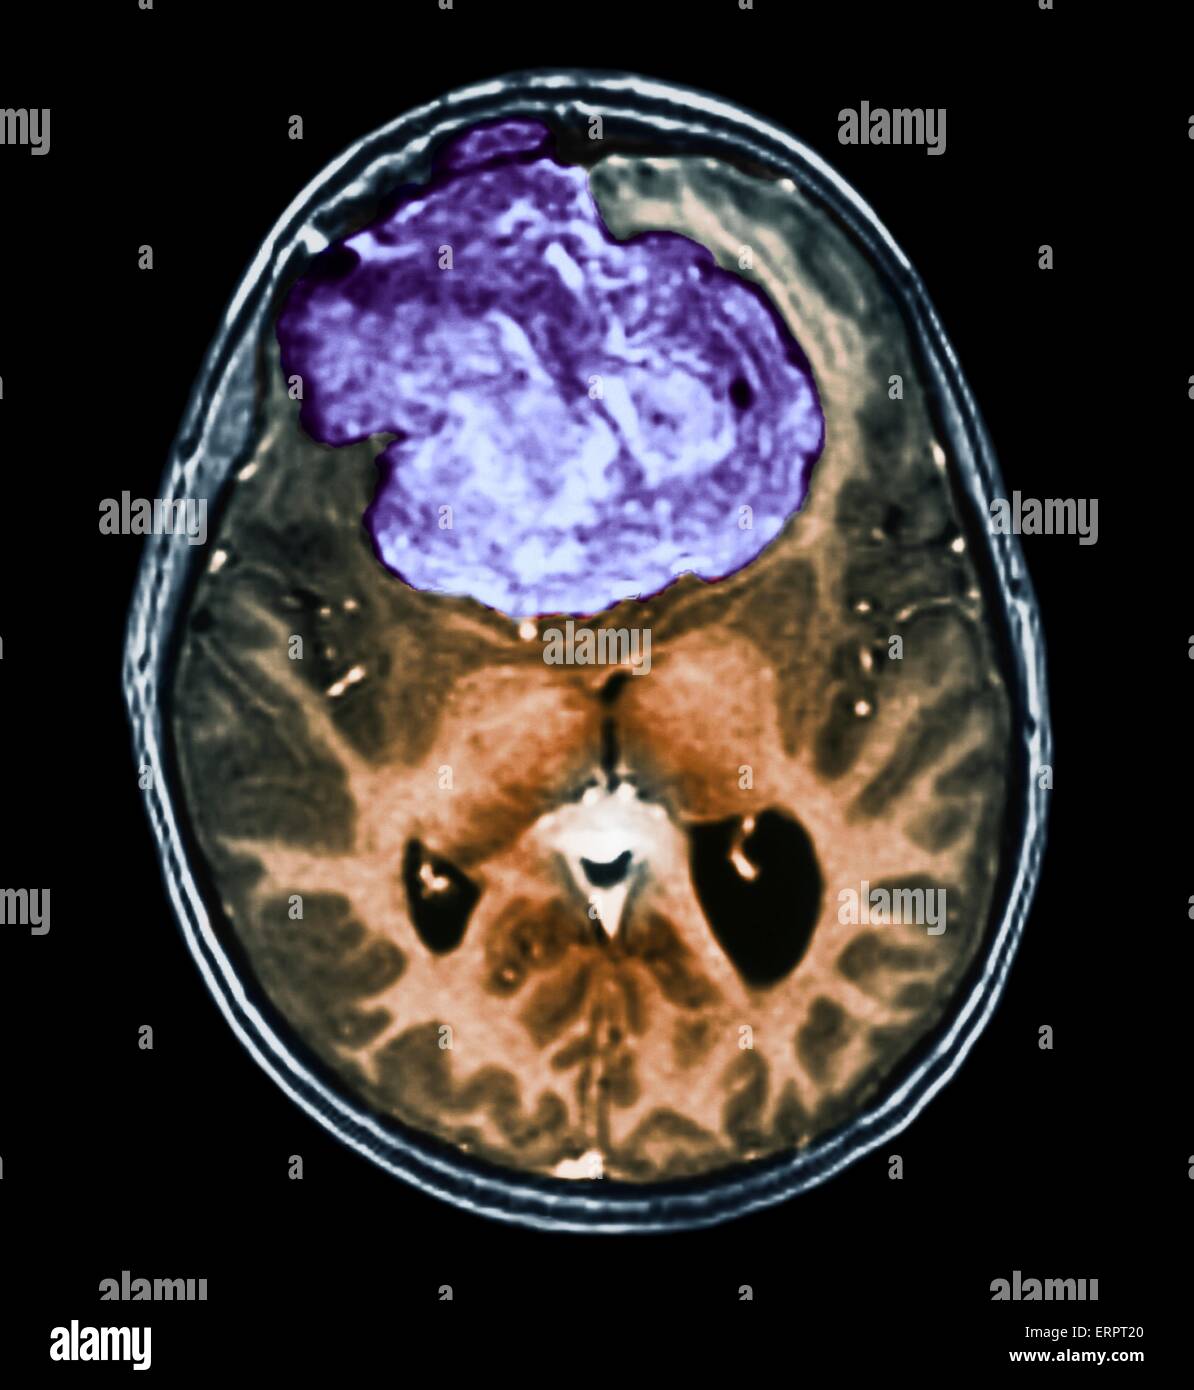 Gutartiger Hirntumor. Farbige Computertomographie (CT) Untersuchung des Gehirns eine 25 jährige Patientin mit einem Meningeom (lila). Dies ist ein gutartig (nicht krebsartige) Tumor, der aus der Hirnhaut entsteht, die Membranen, die das Gehirn umgeben. Es wurde verursacht durch ra Stockfoto